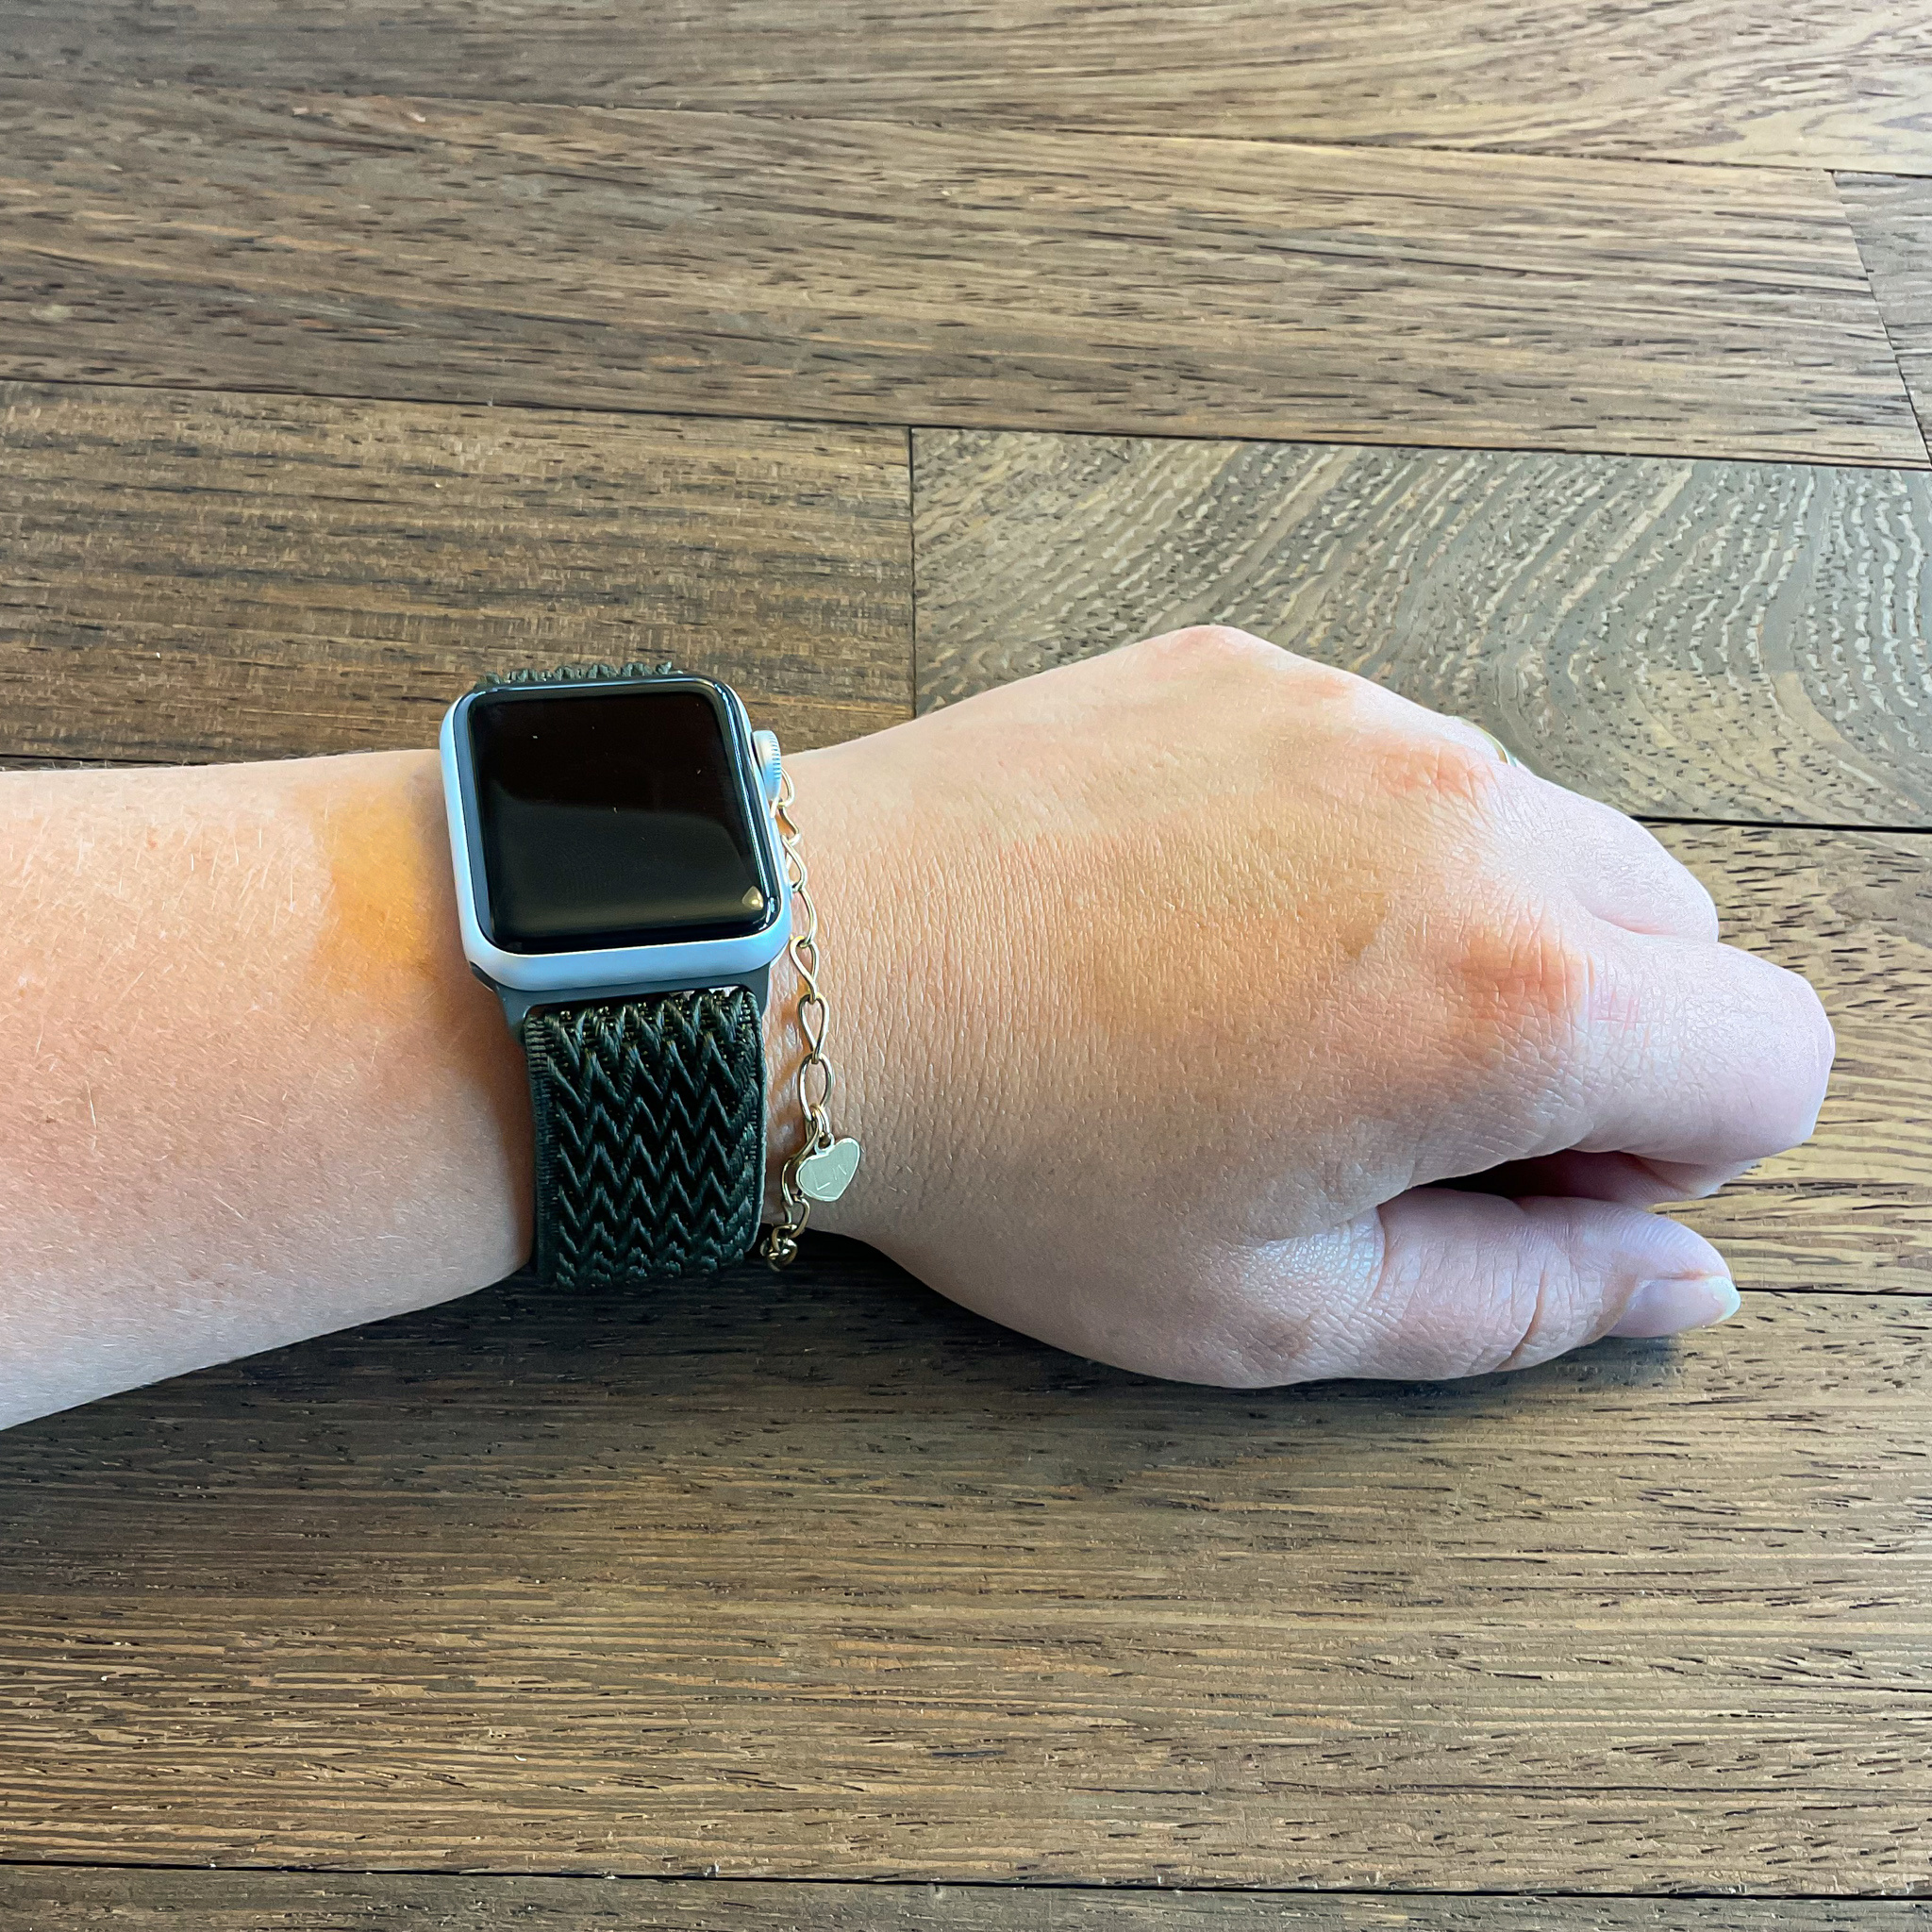 Cinturino solista in nylon per Apple Watch - verde militare